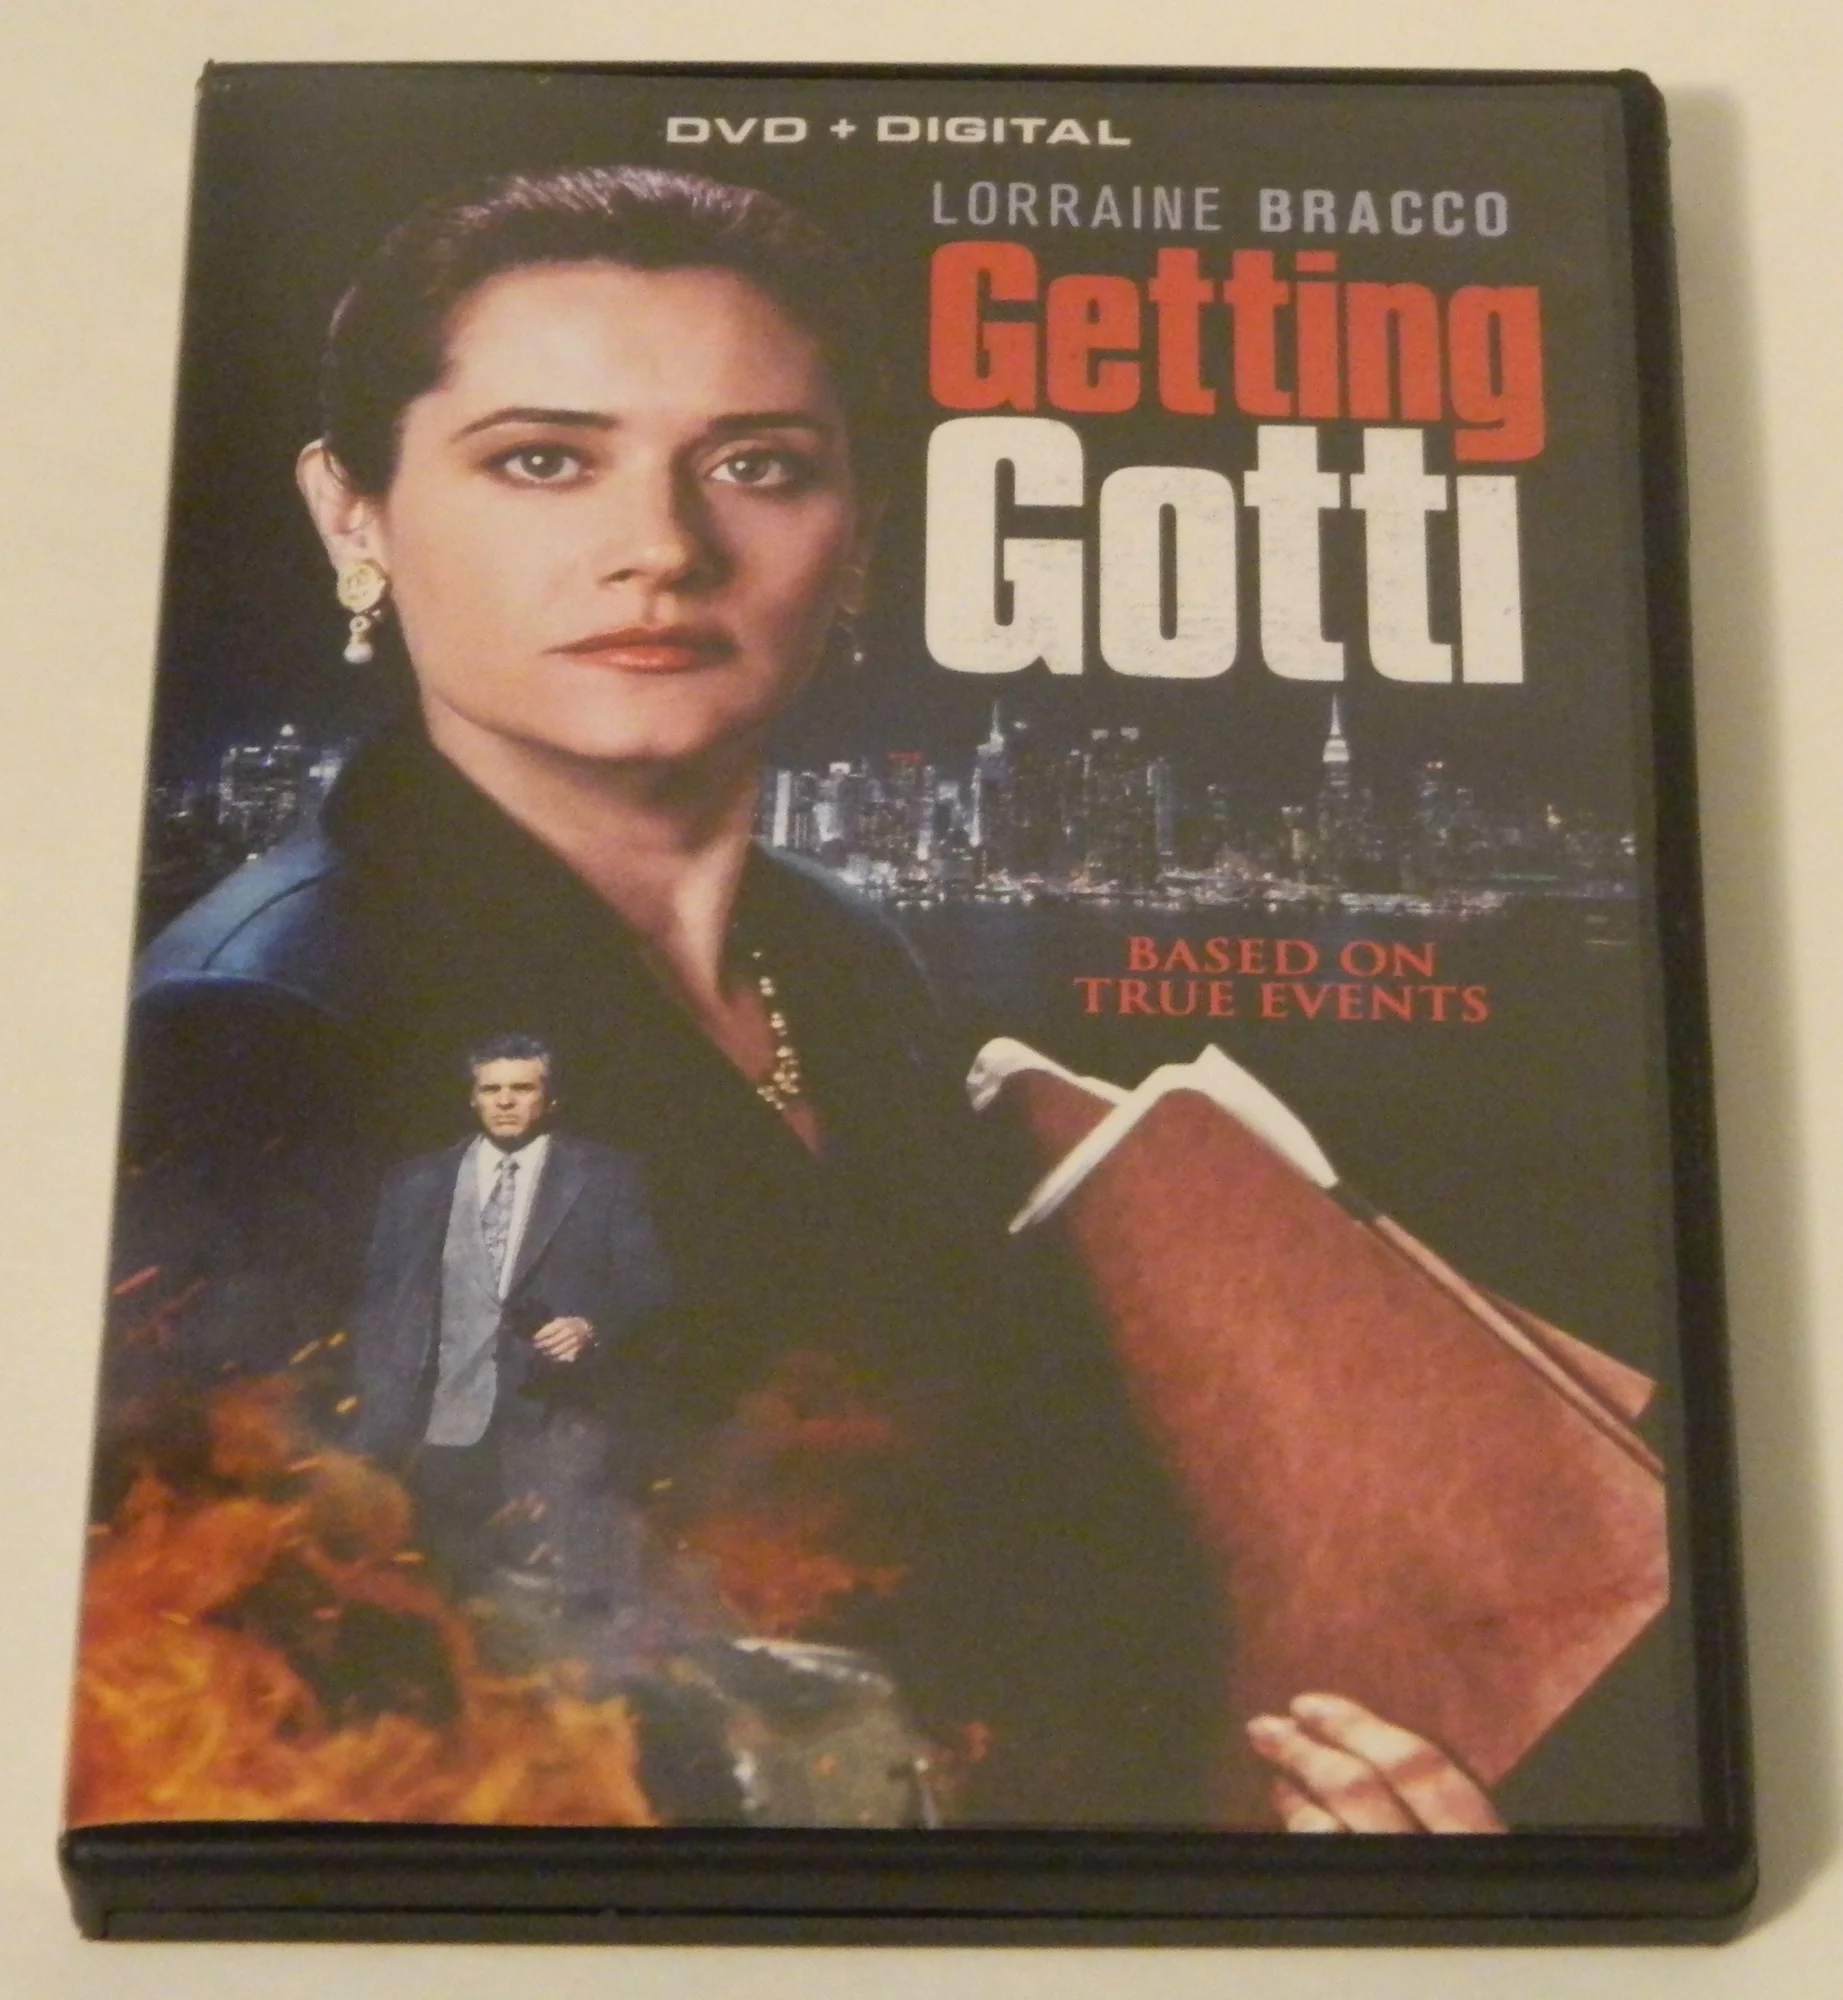 Gotti (DVD)